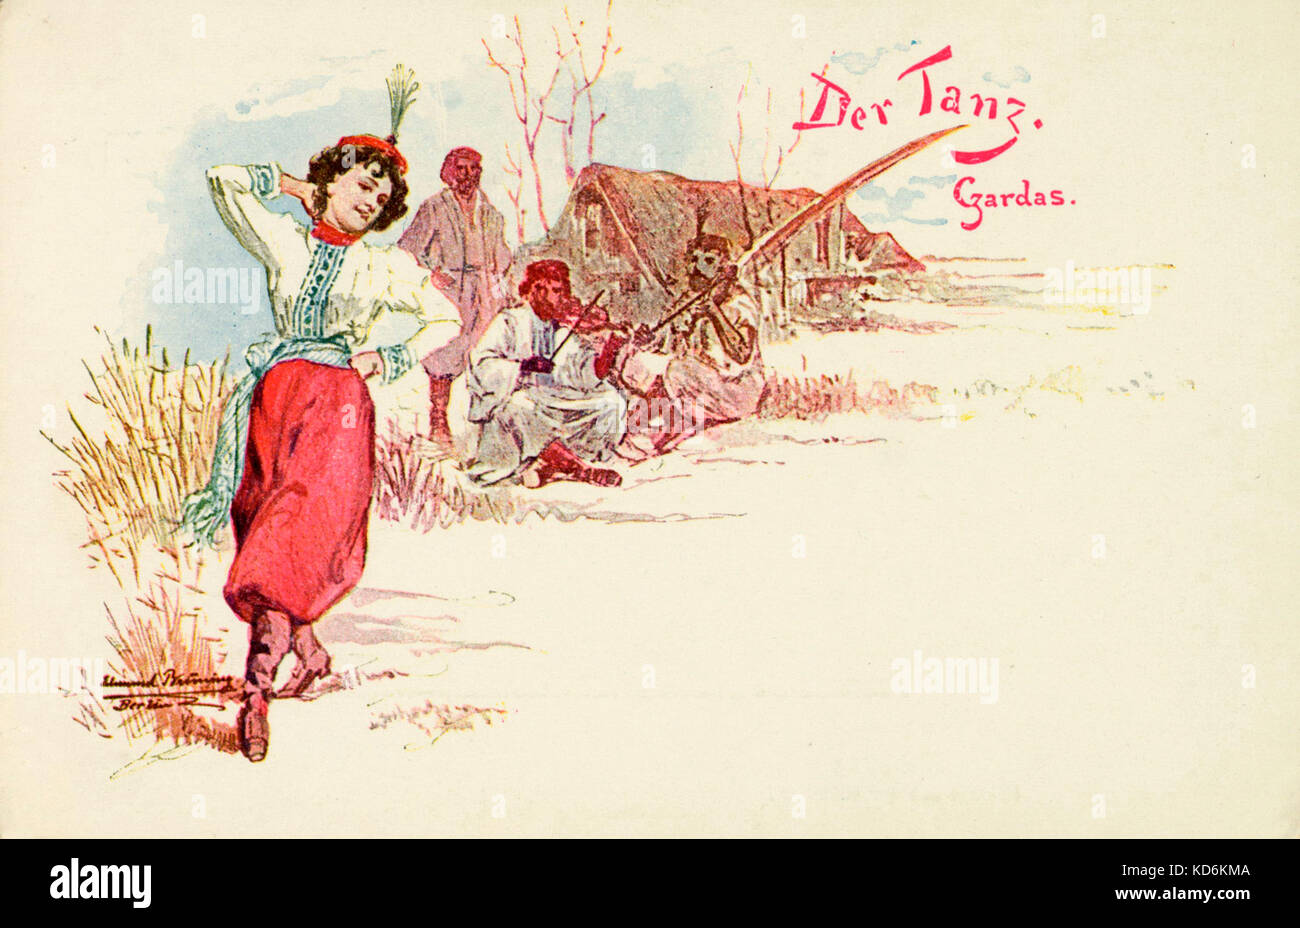 Jeune fille danse Danse hongroise en costume traditionnel, au son de deux violons joués par les gitans. Austro-hongrois au début du xxe siècle. Der Tanz, Czardas. Lehár. Banque D'Images